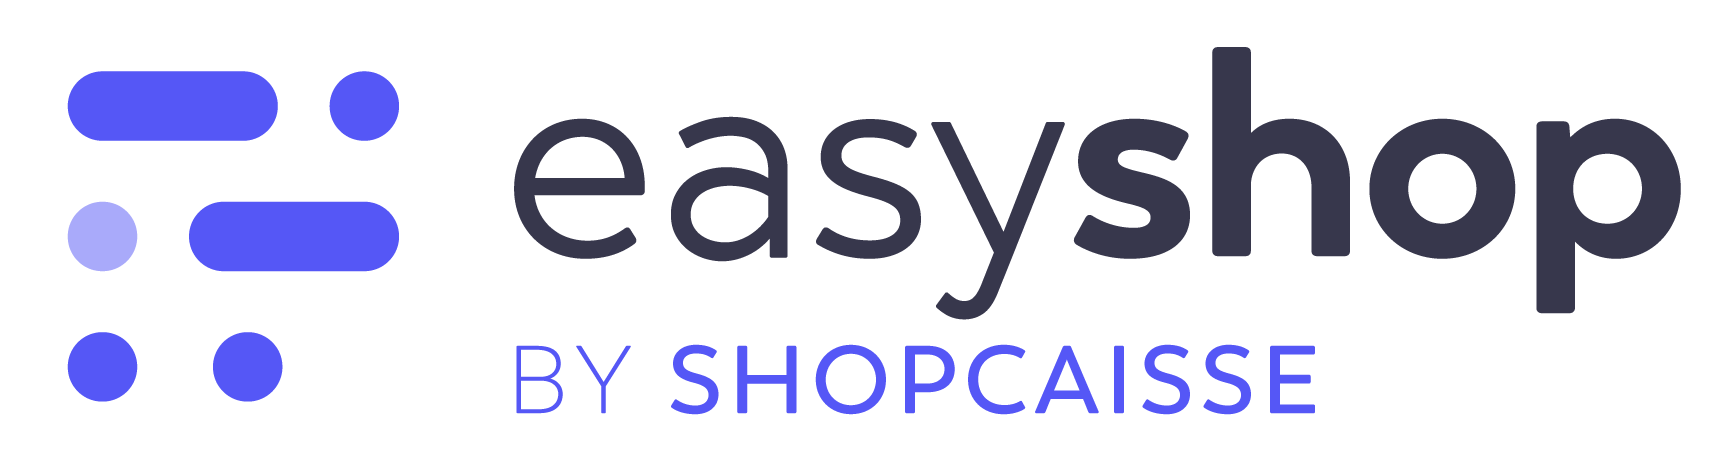 logo easyshop shopcaisse